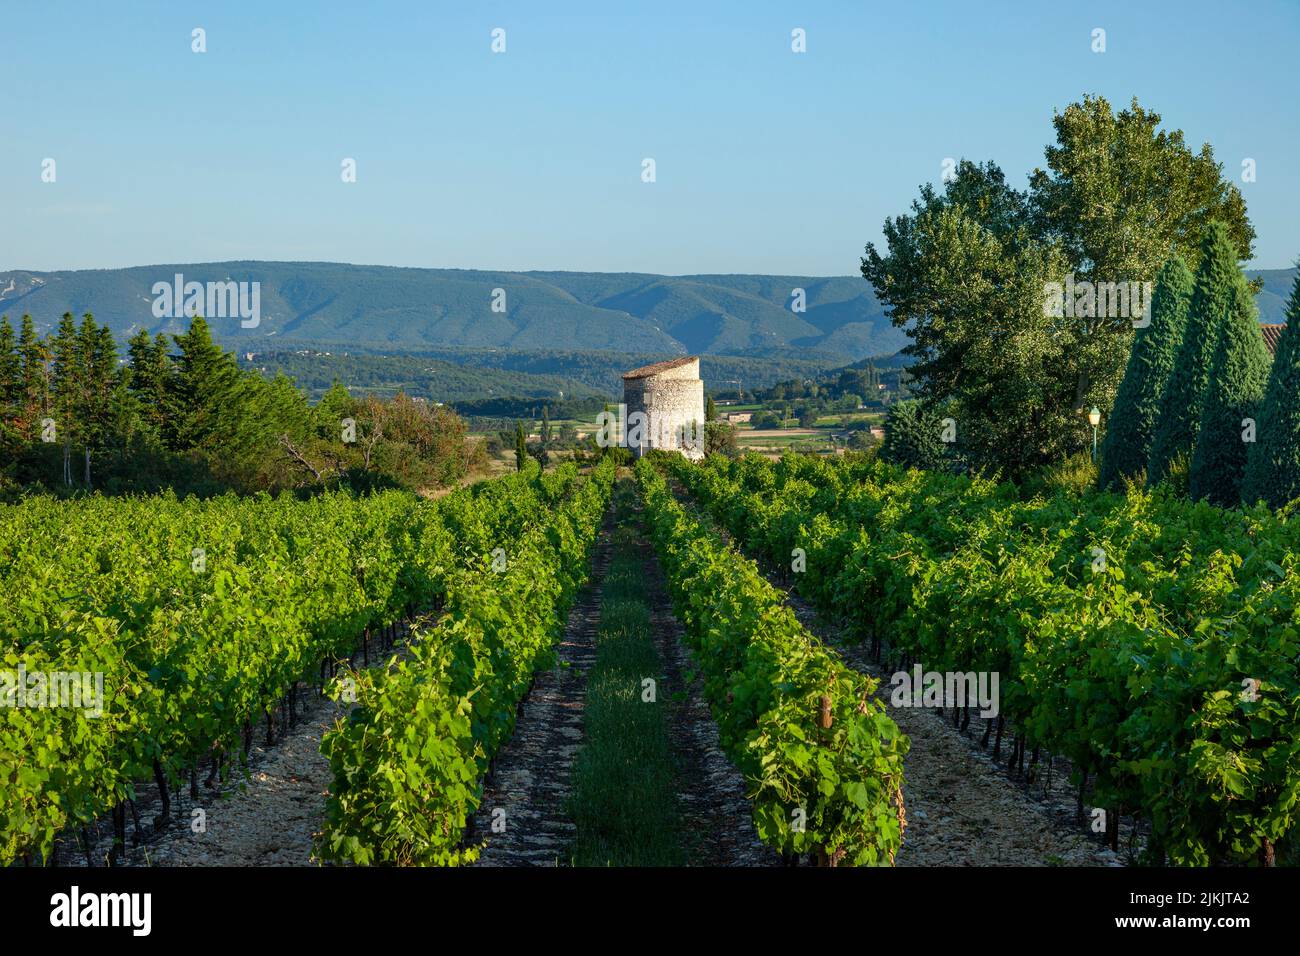 Petit vignoble et location de vacances près de Gordes avec le massif du Luberon au-delà, Provence, France Banque D'Images